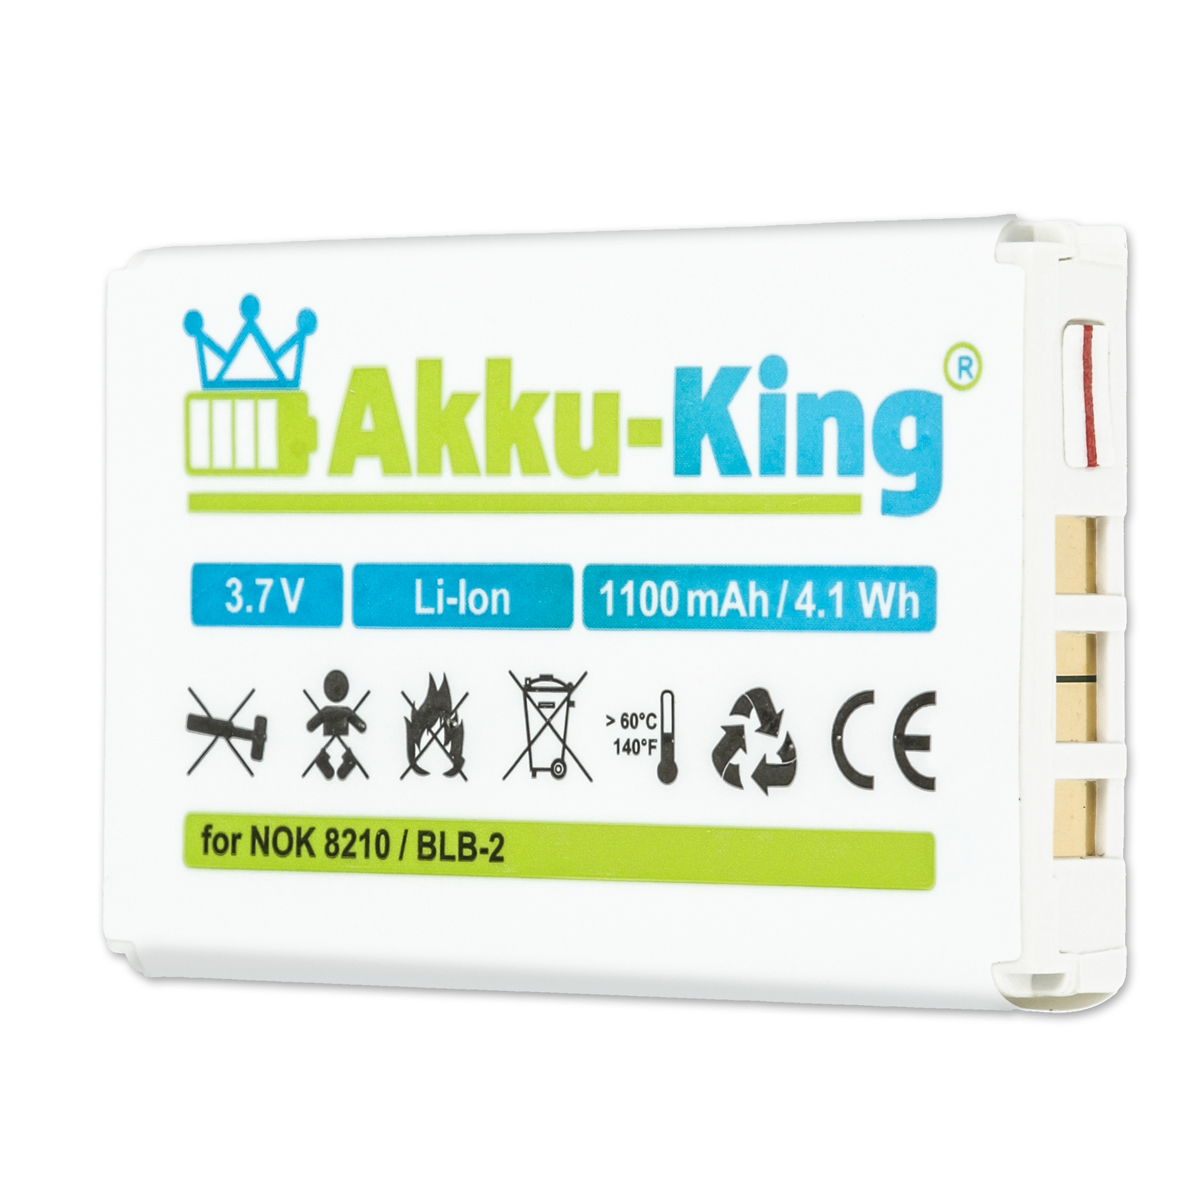 mit AKKU-KING kompatibel Olympic Volt, Kamera-Akku, 1100mAh Li-Ion 3.7 BLB-2 Akku